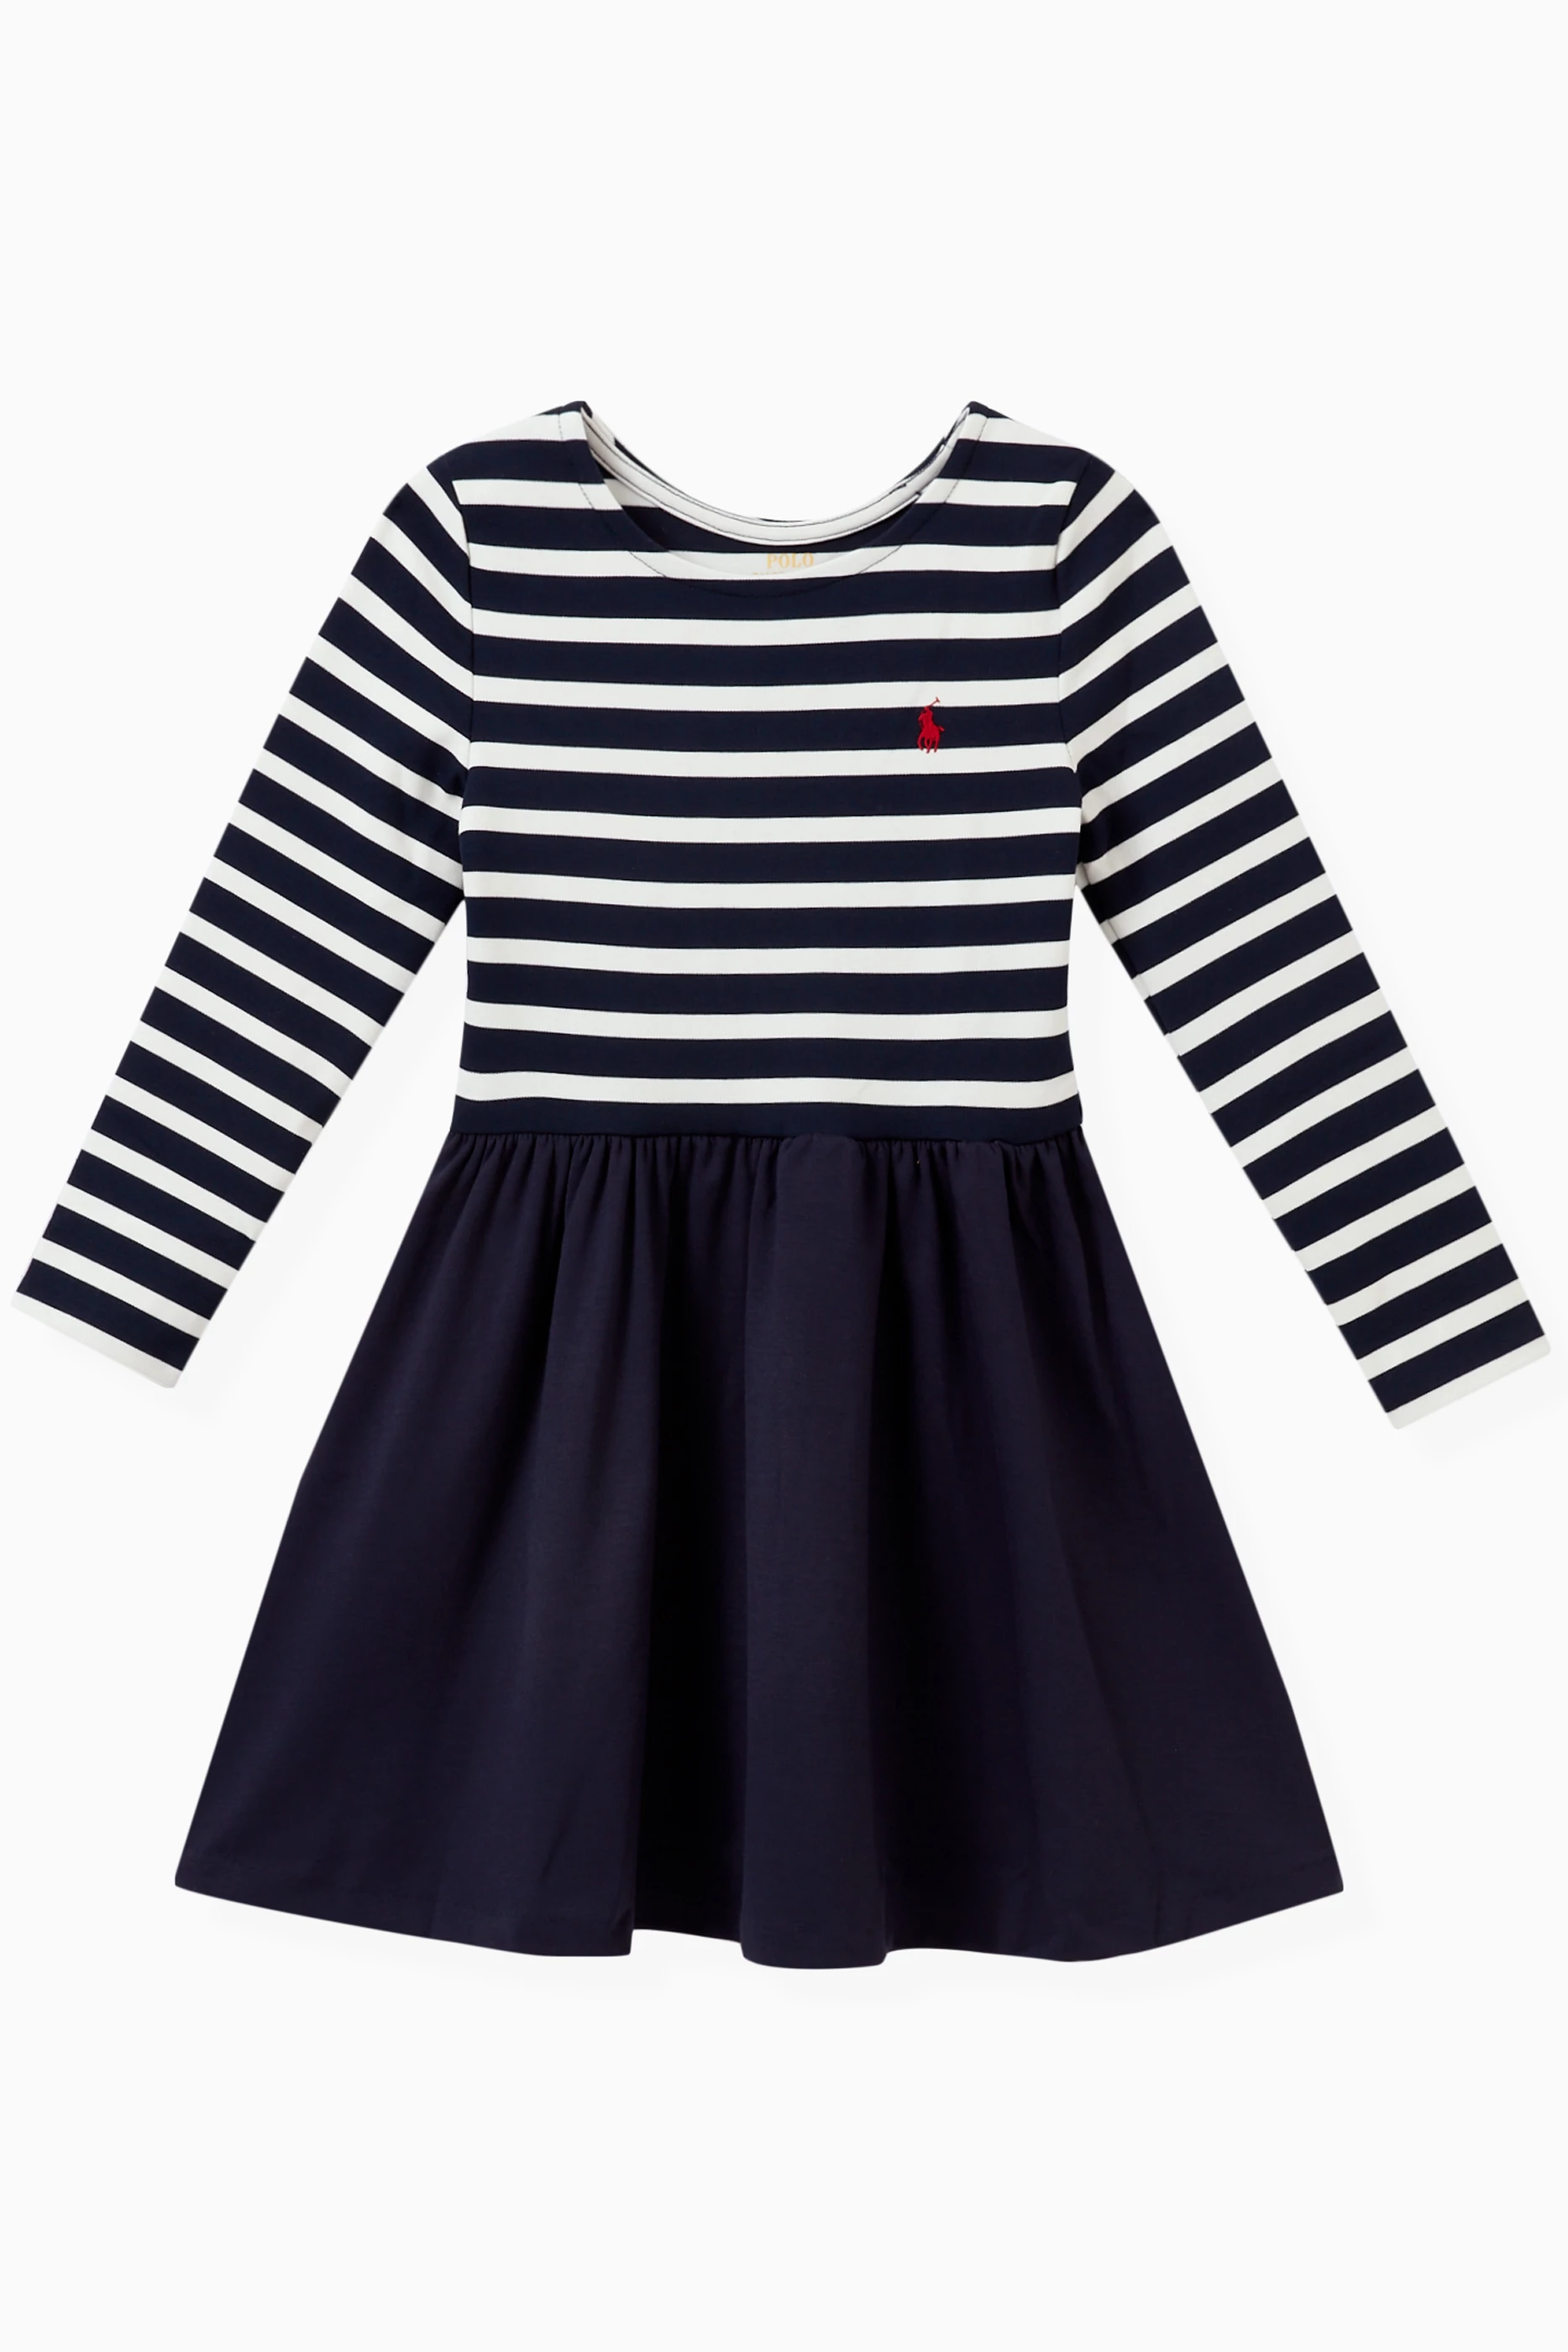 Shop Polo Ralph Lauren Blue Striped Day Dress in Cotton for KIDS | Ounass  Qatar